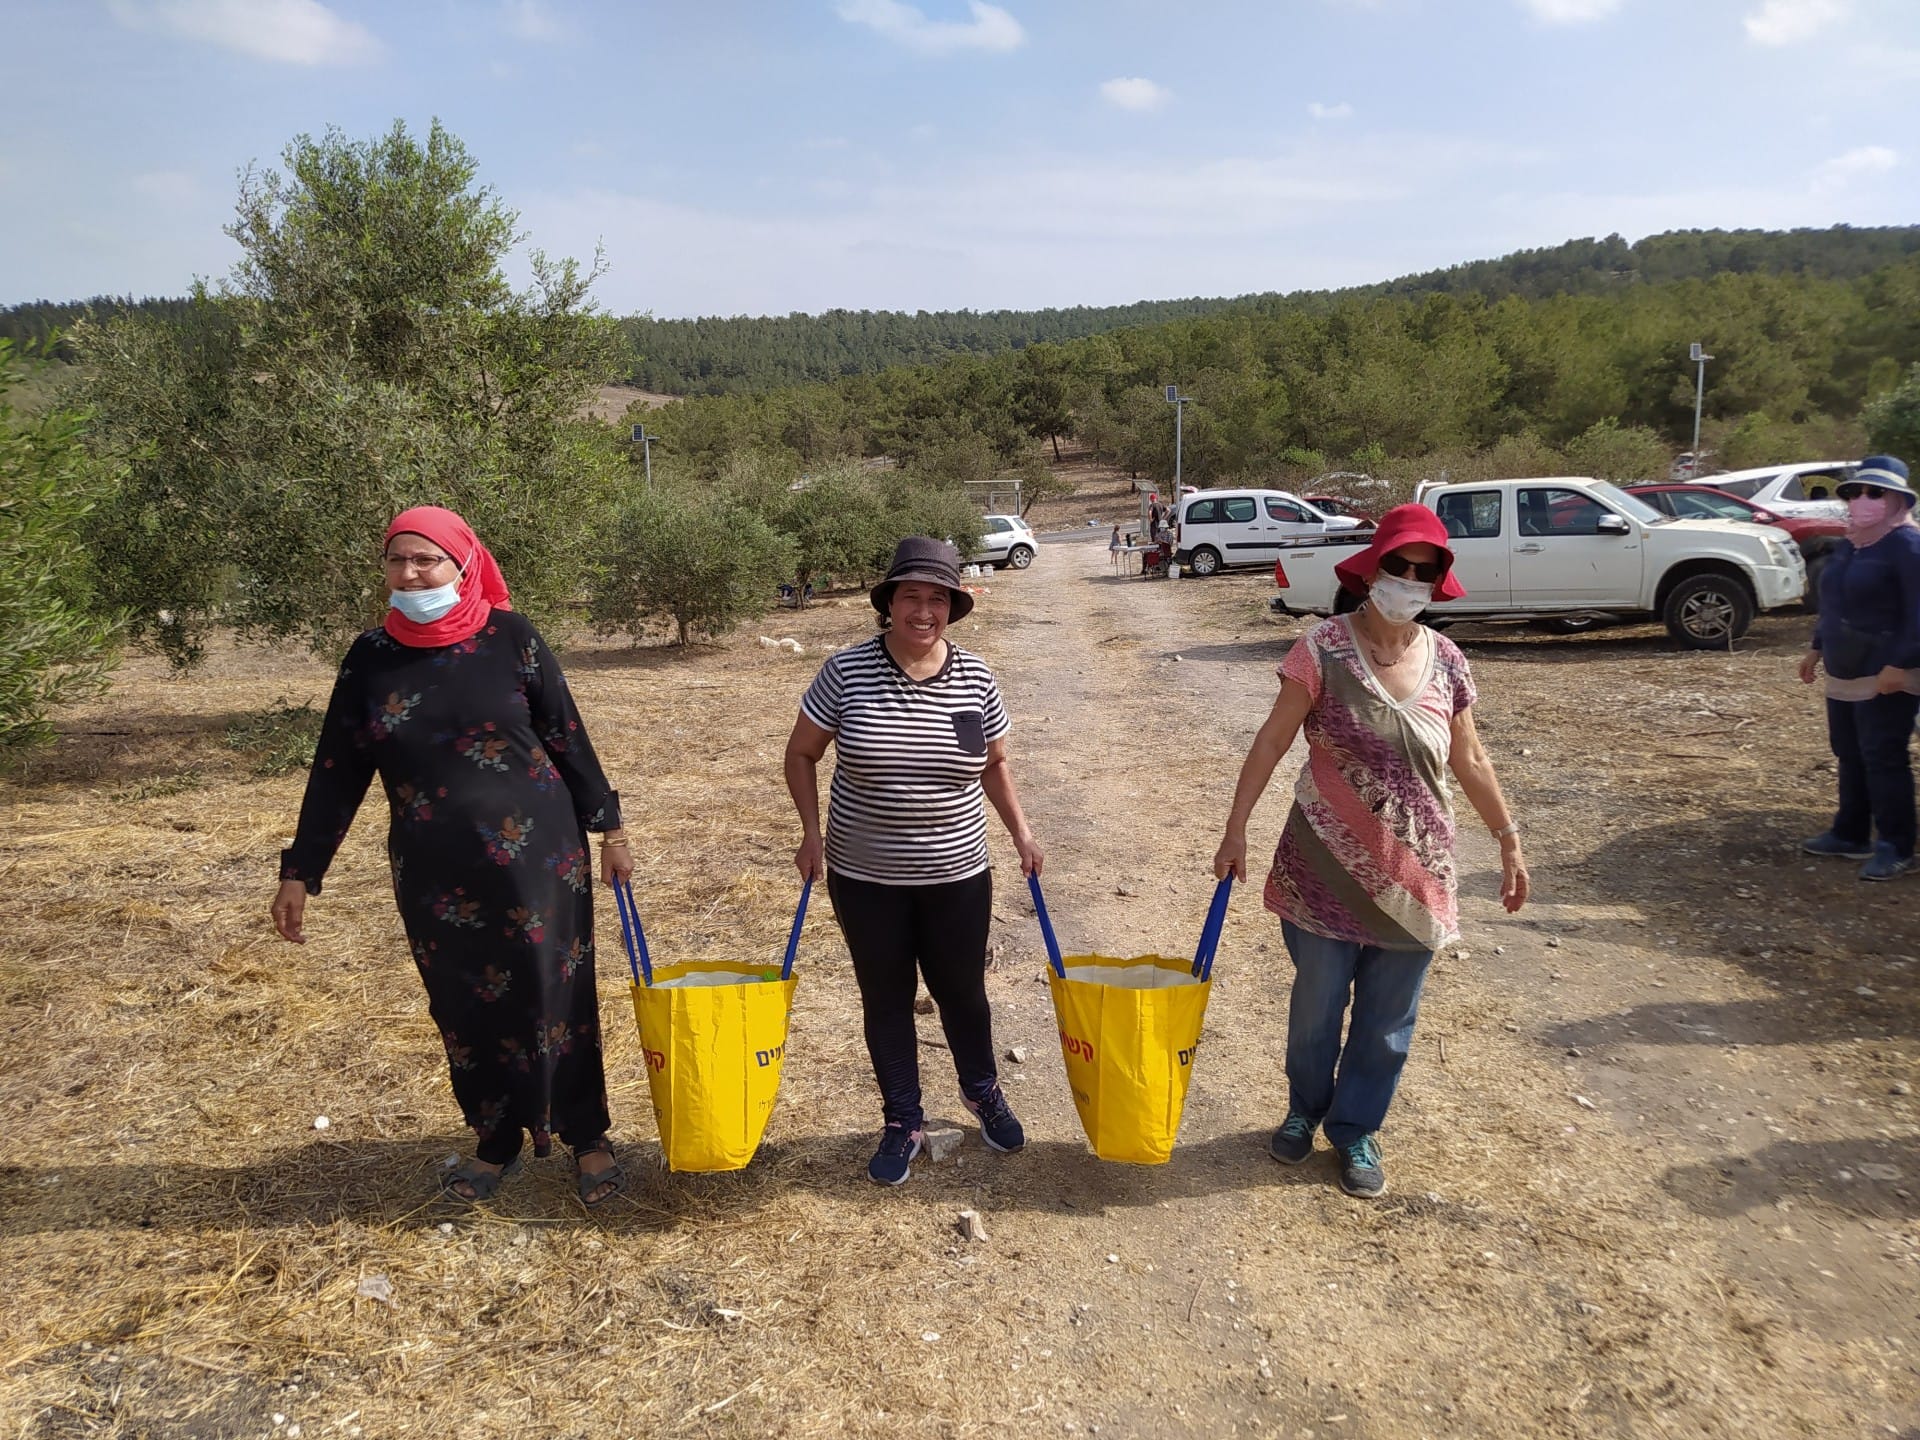 Afrika-srednji-istok-profili-dovođenje-Palestinaca-i-Izraelaca-zajedno-kroz-proizvodnju-maslinova-ulja-vremena-maslinova-ulja